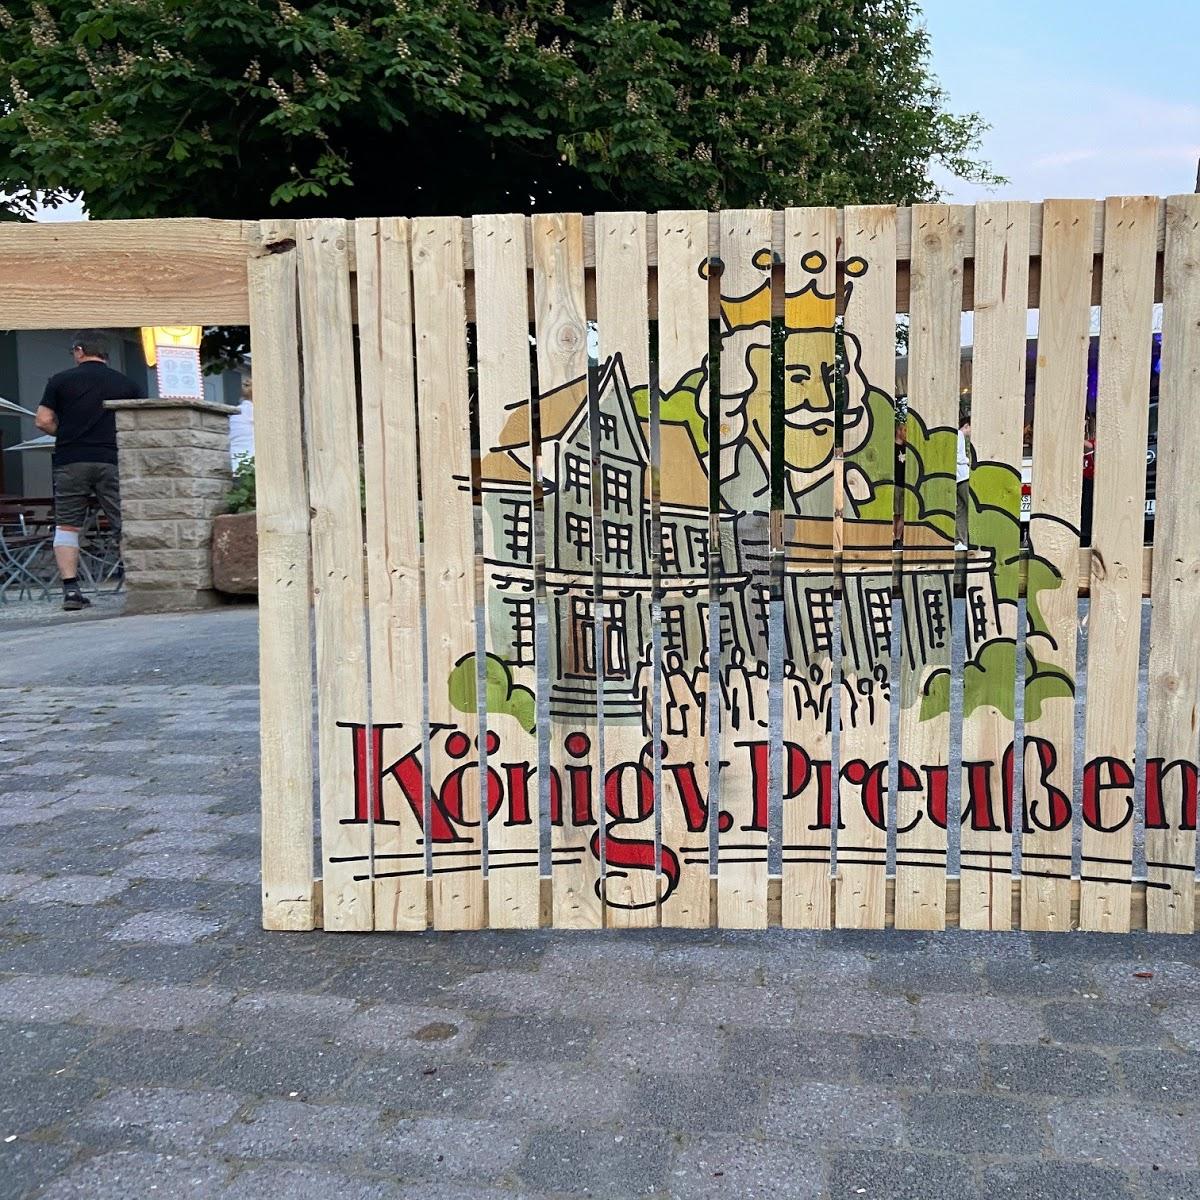 Restaurant "Zum König von Preußen" in Helsa